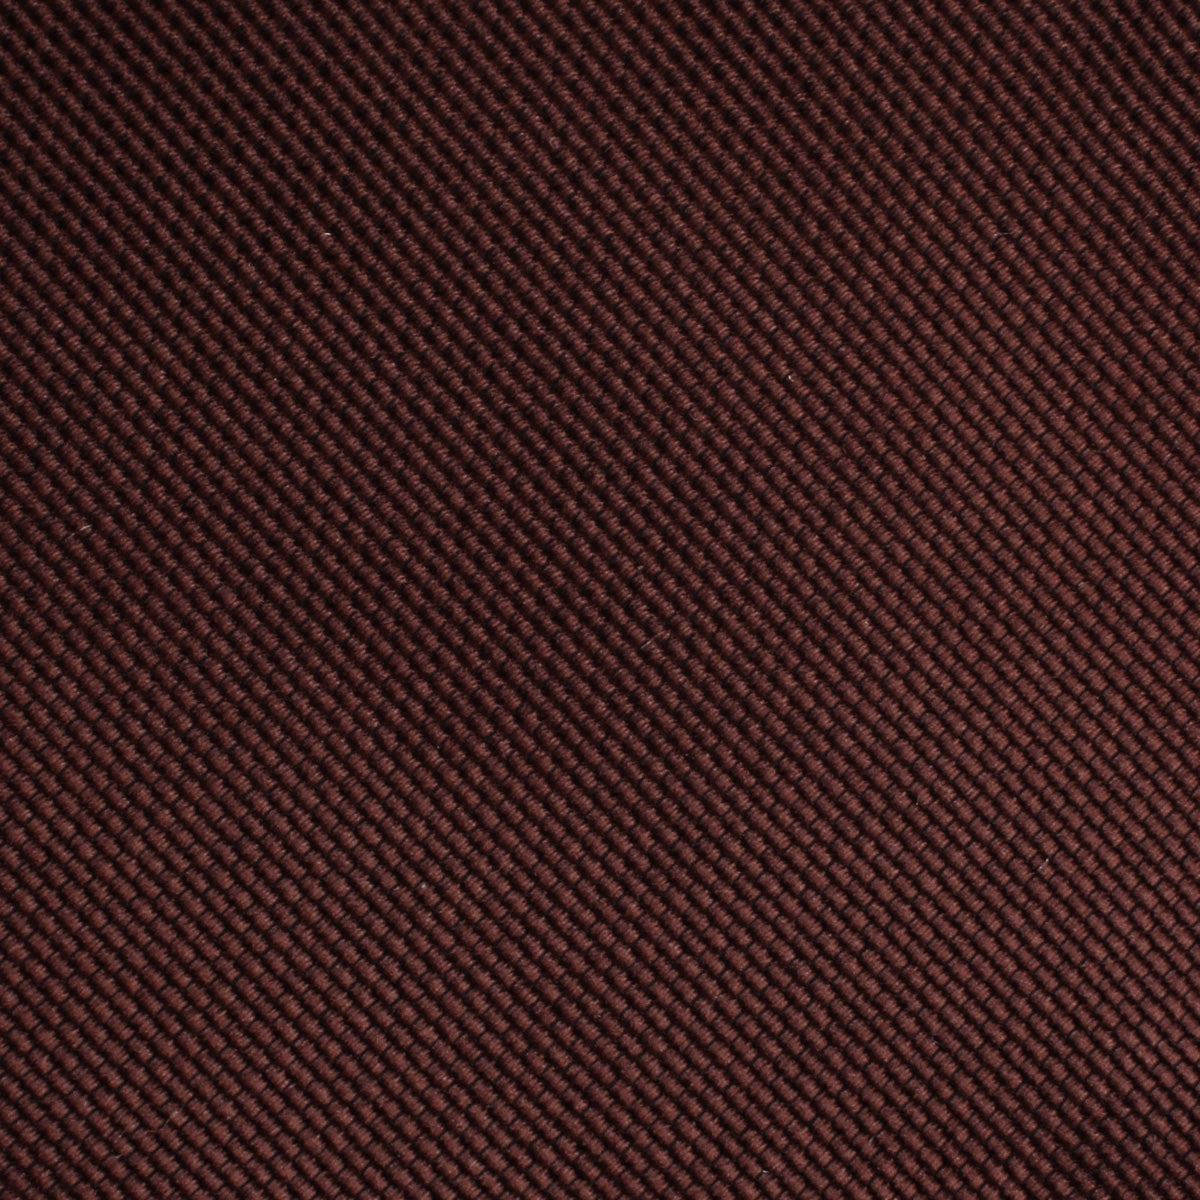 Dark Brown Weave Necktie Fabric